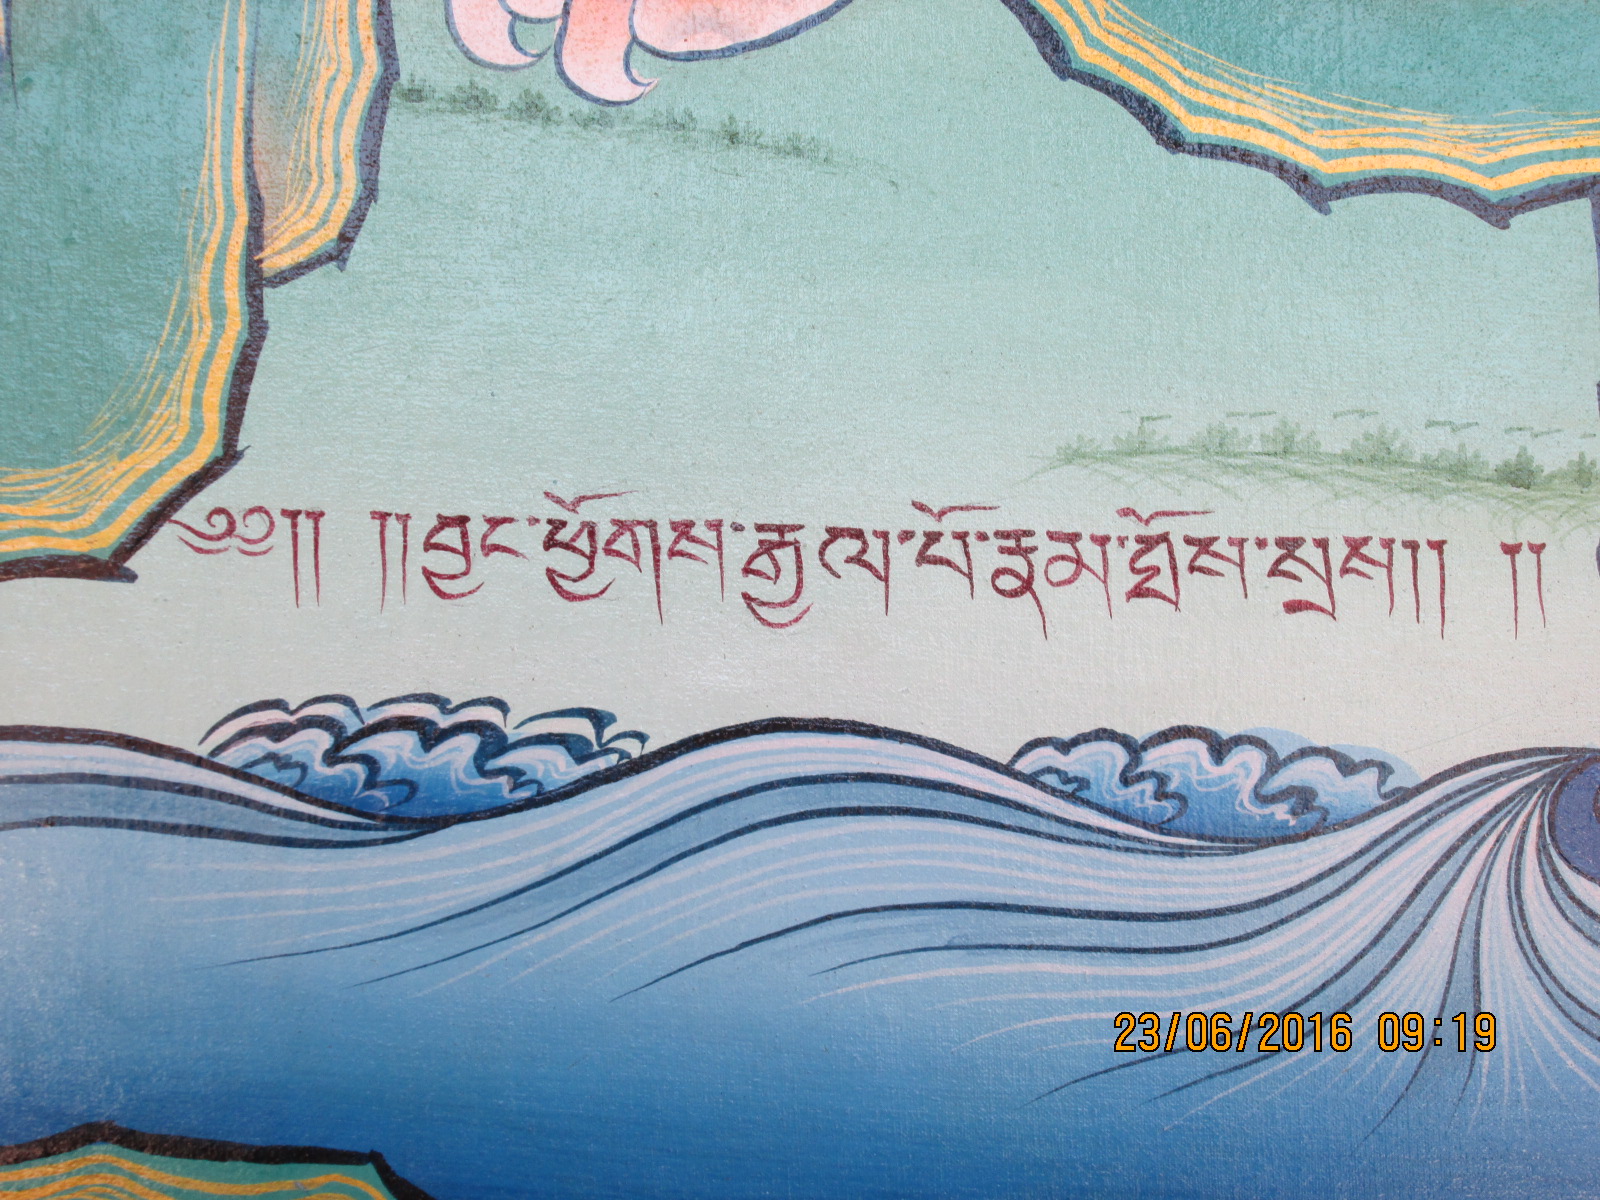 une inscription en tibetain